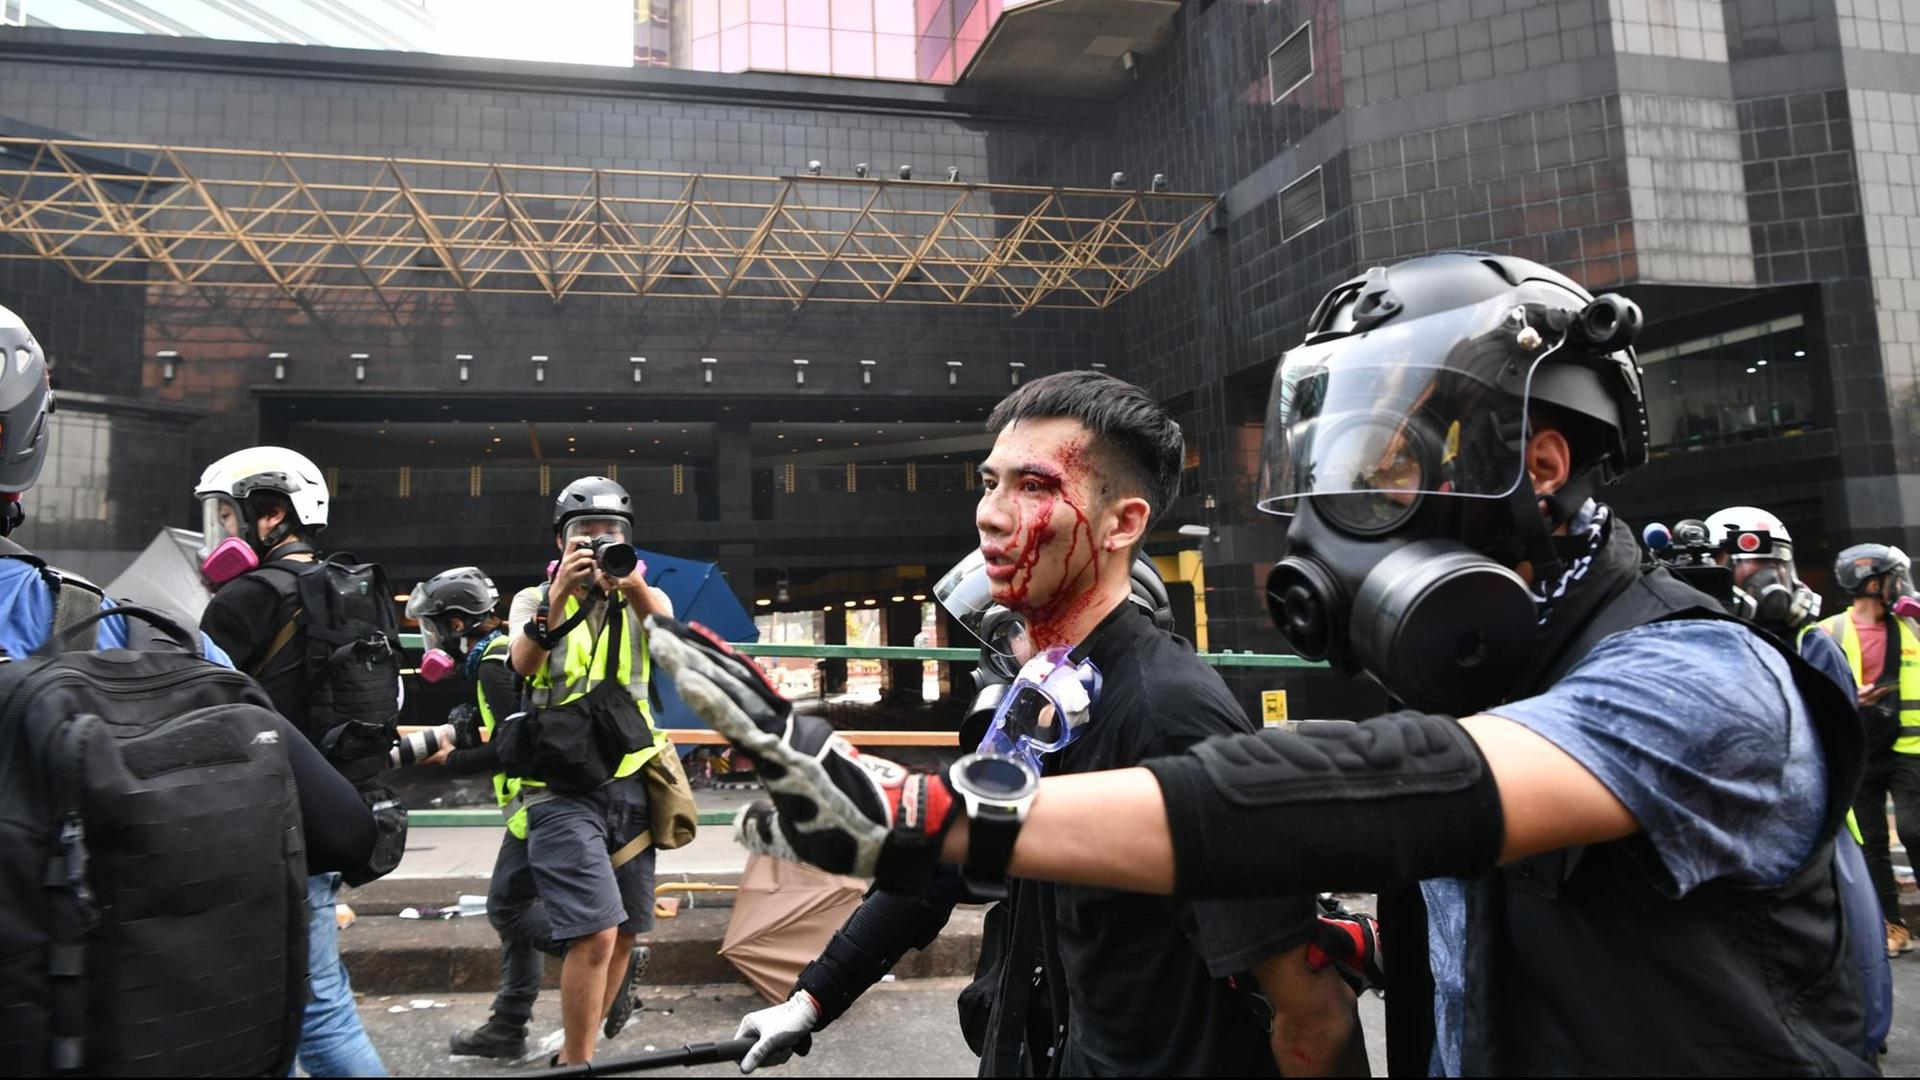 Ein im Demonstrant wird in Hongkong von Polizisten abgeführt. Er ist am Kopf verletzt, Blut rinnt über das Gesicht. Die Polizisten tragen Helme und Atemschutzmasken. Ein Fotograf fotografiert die Szene.